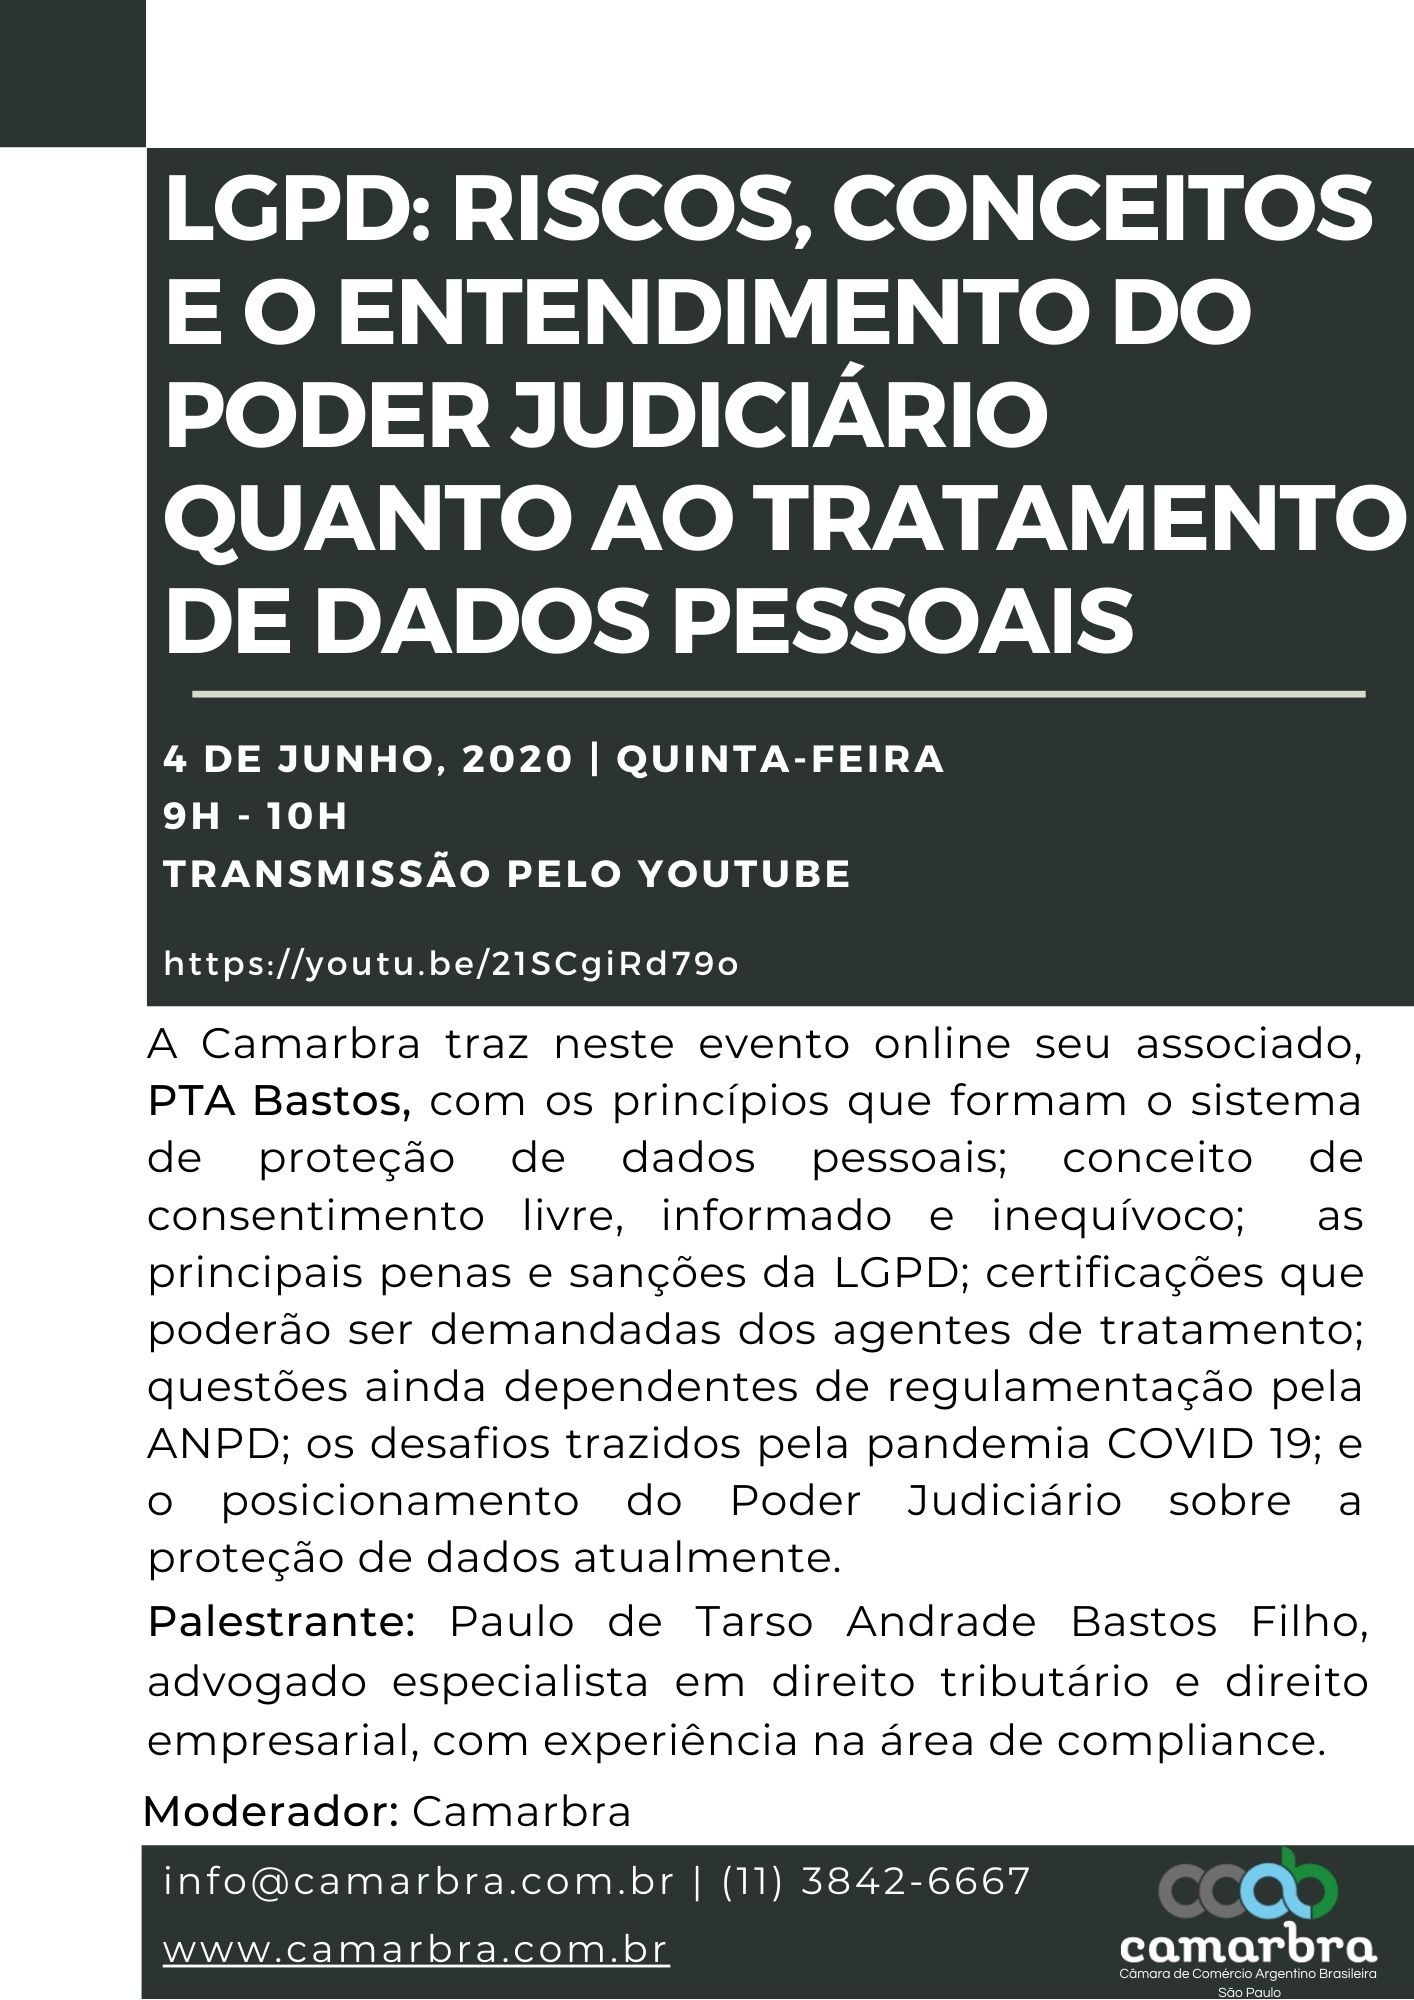 LGPD: Riscos, Conceitos e o Entendimento do Poder Judiciário quanto ao Tratamento de Dados Pessoais